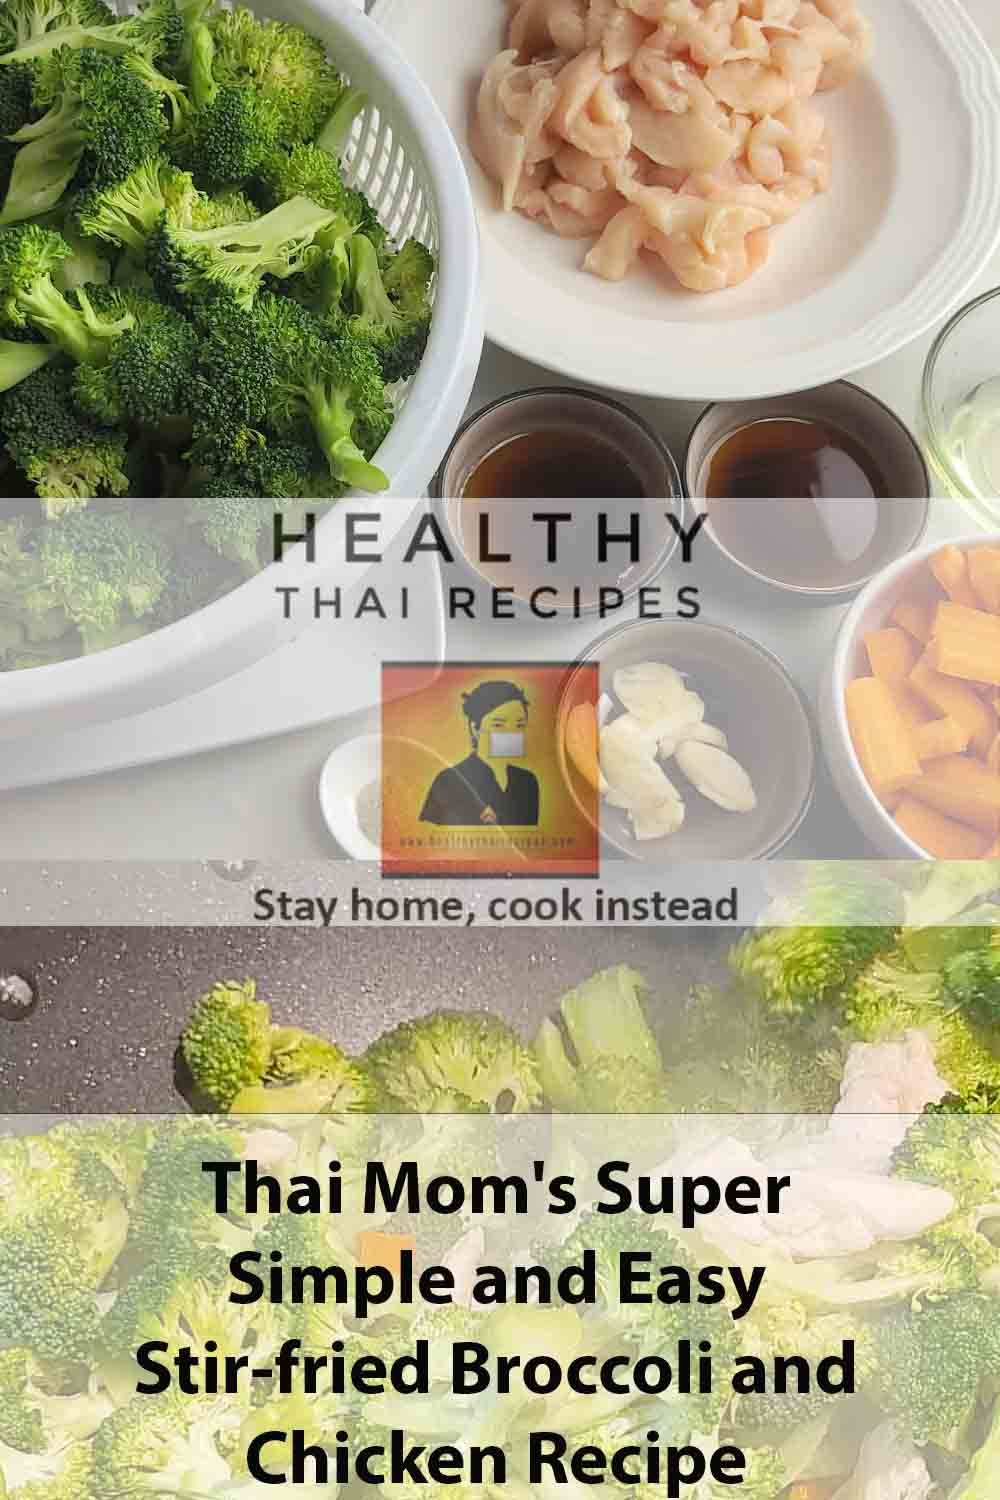 ผัดบร็อคโคลี่และไก่สูตรง่ายๆ ของแม่ไทย Pinterest Image